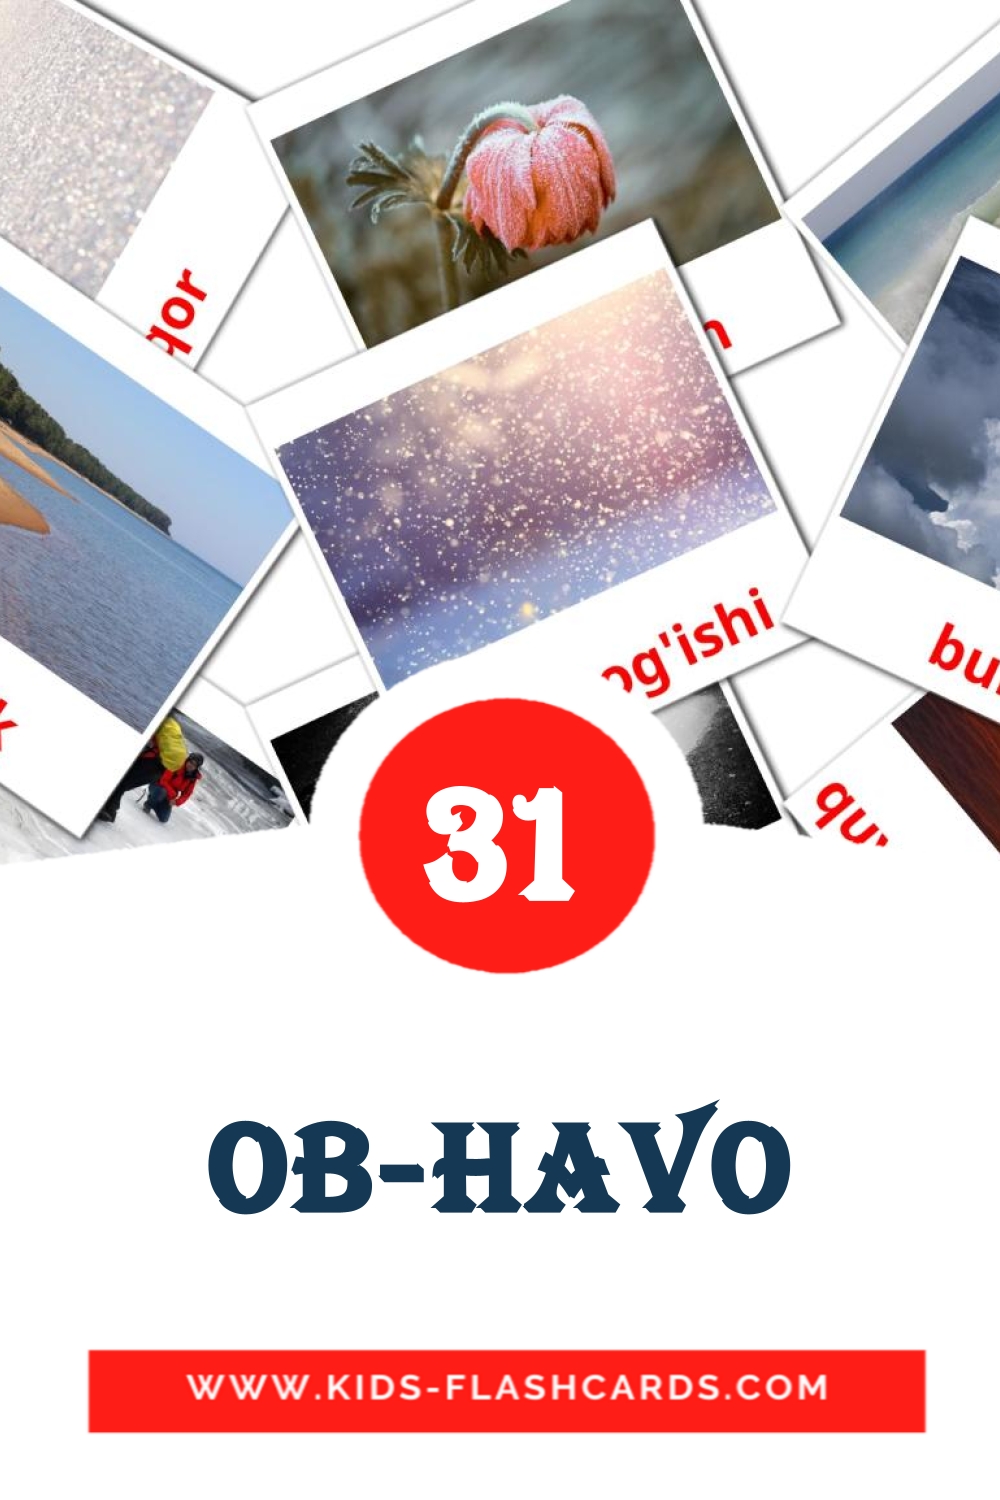 31 cartes illustrées de Ob-havo pour la maternelle en ouzbek